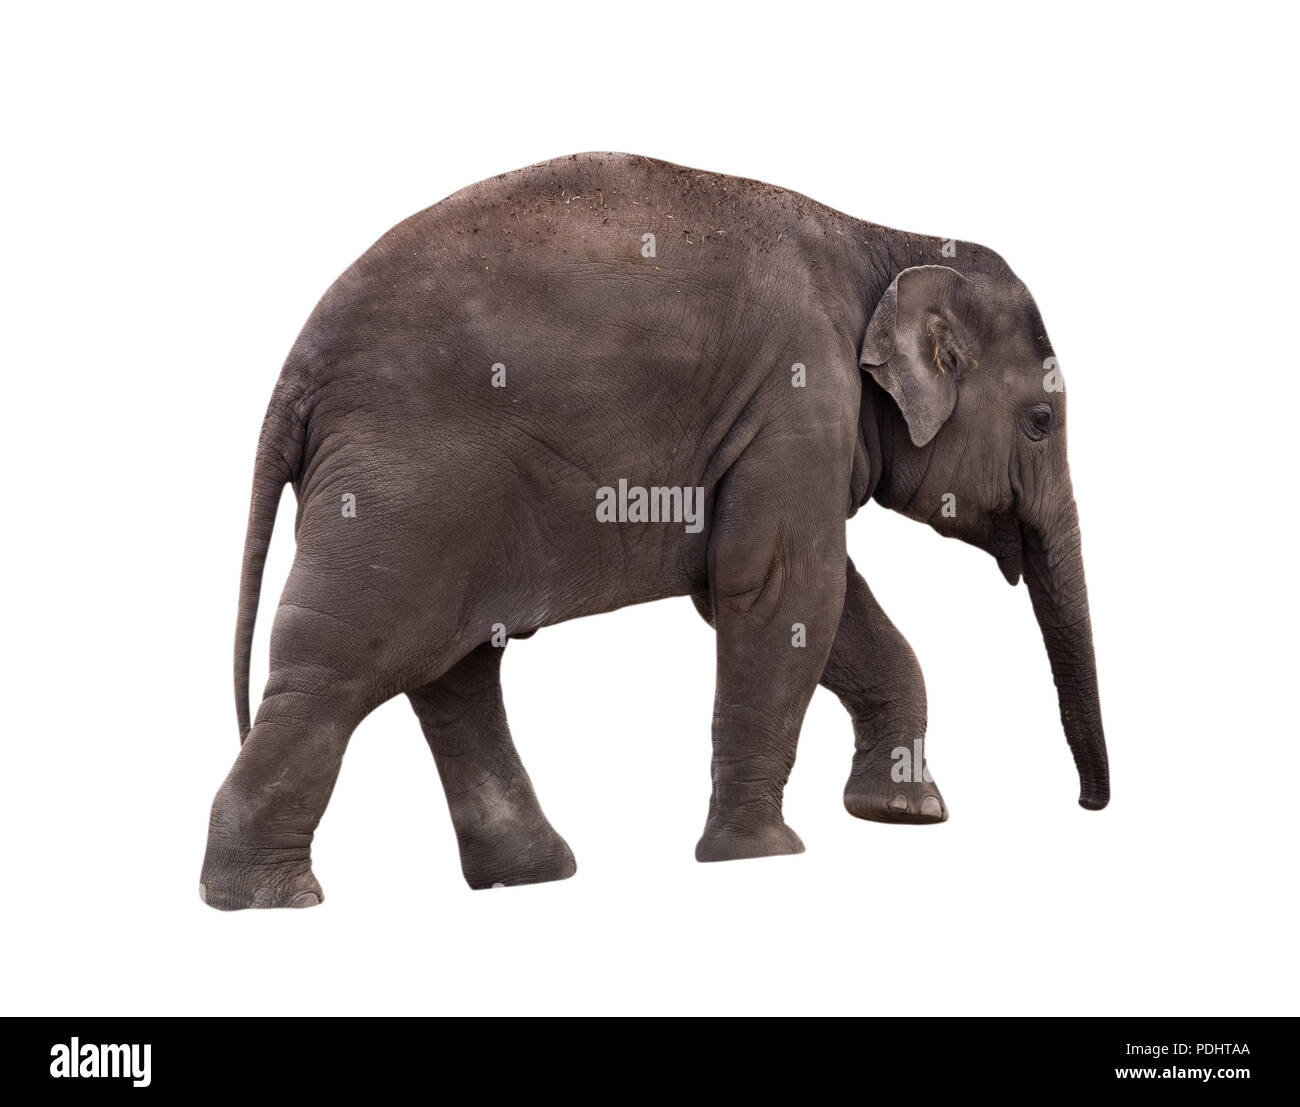 Small elephant isolated on white background Stock Photo